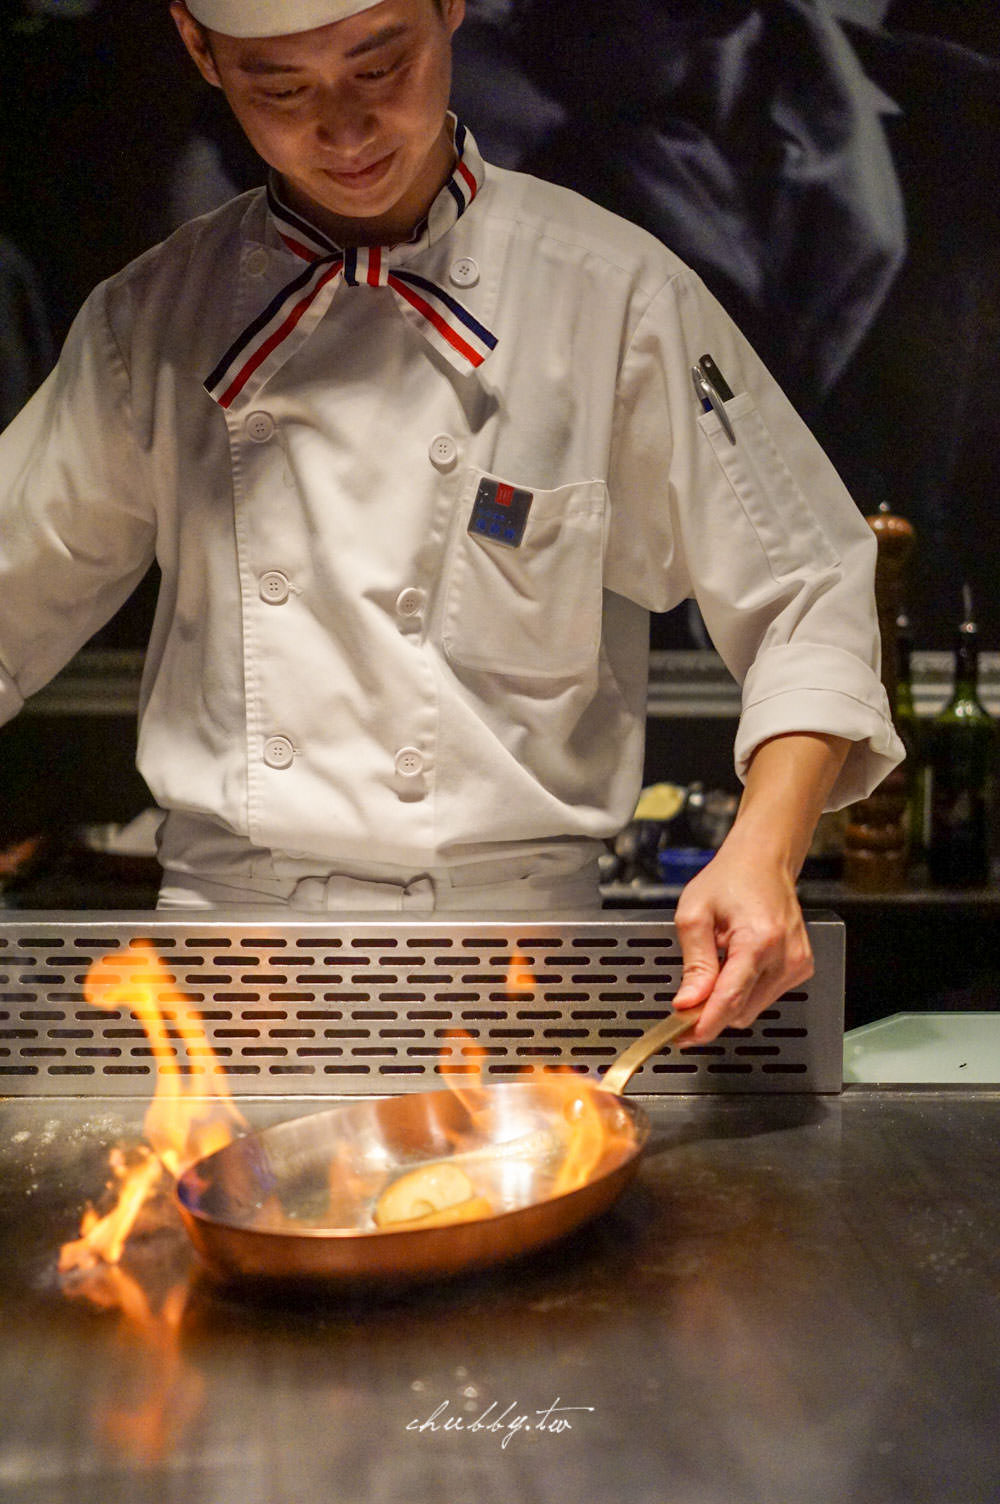 日本A5和牛的最完美料理方式：夏慕尼新香榭鐵板燒